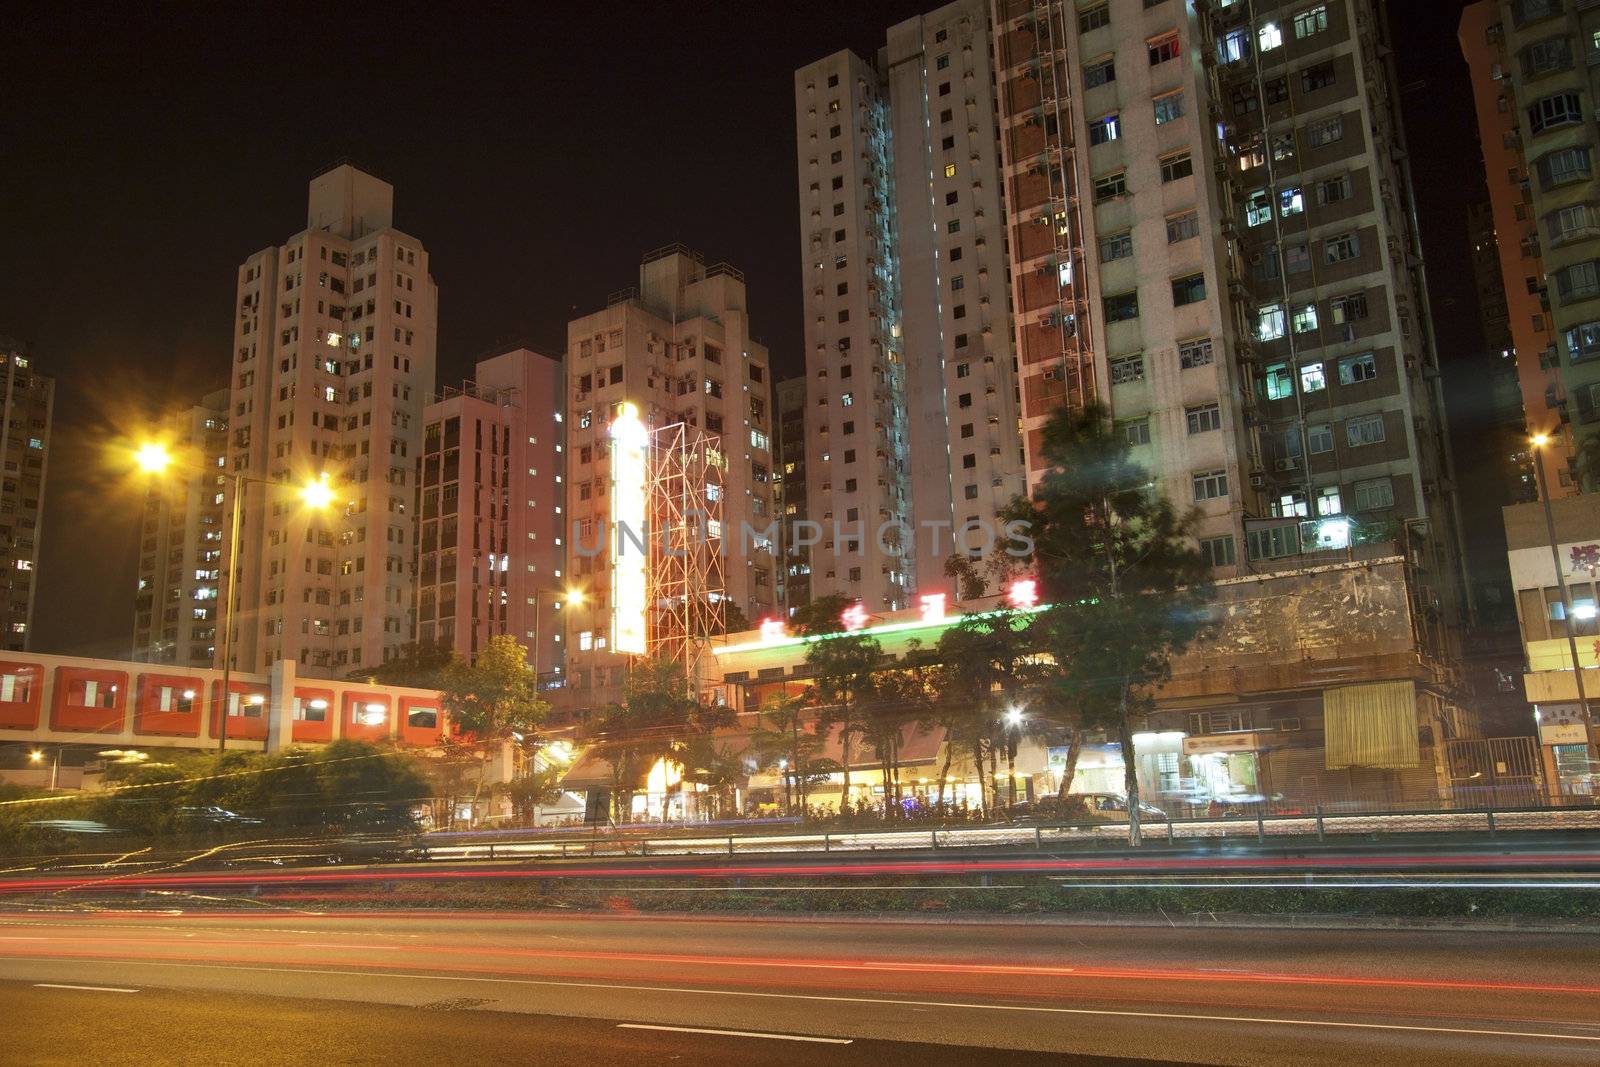 Hong Kong downtown at night by kawing921